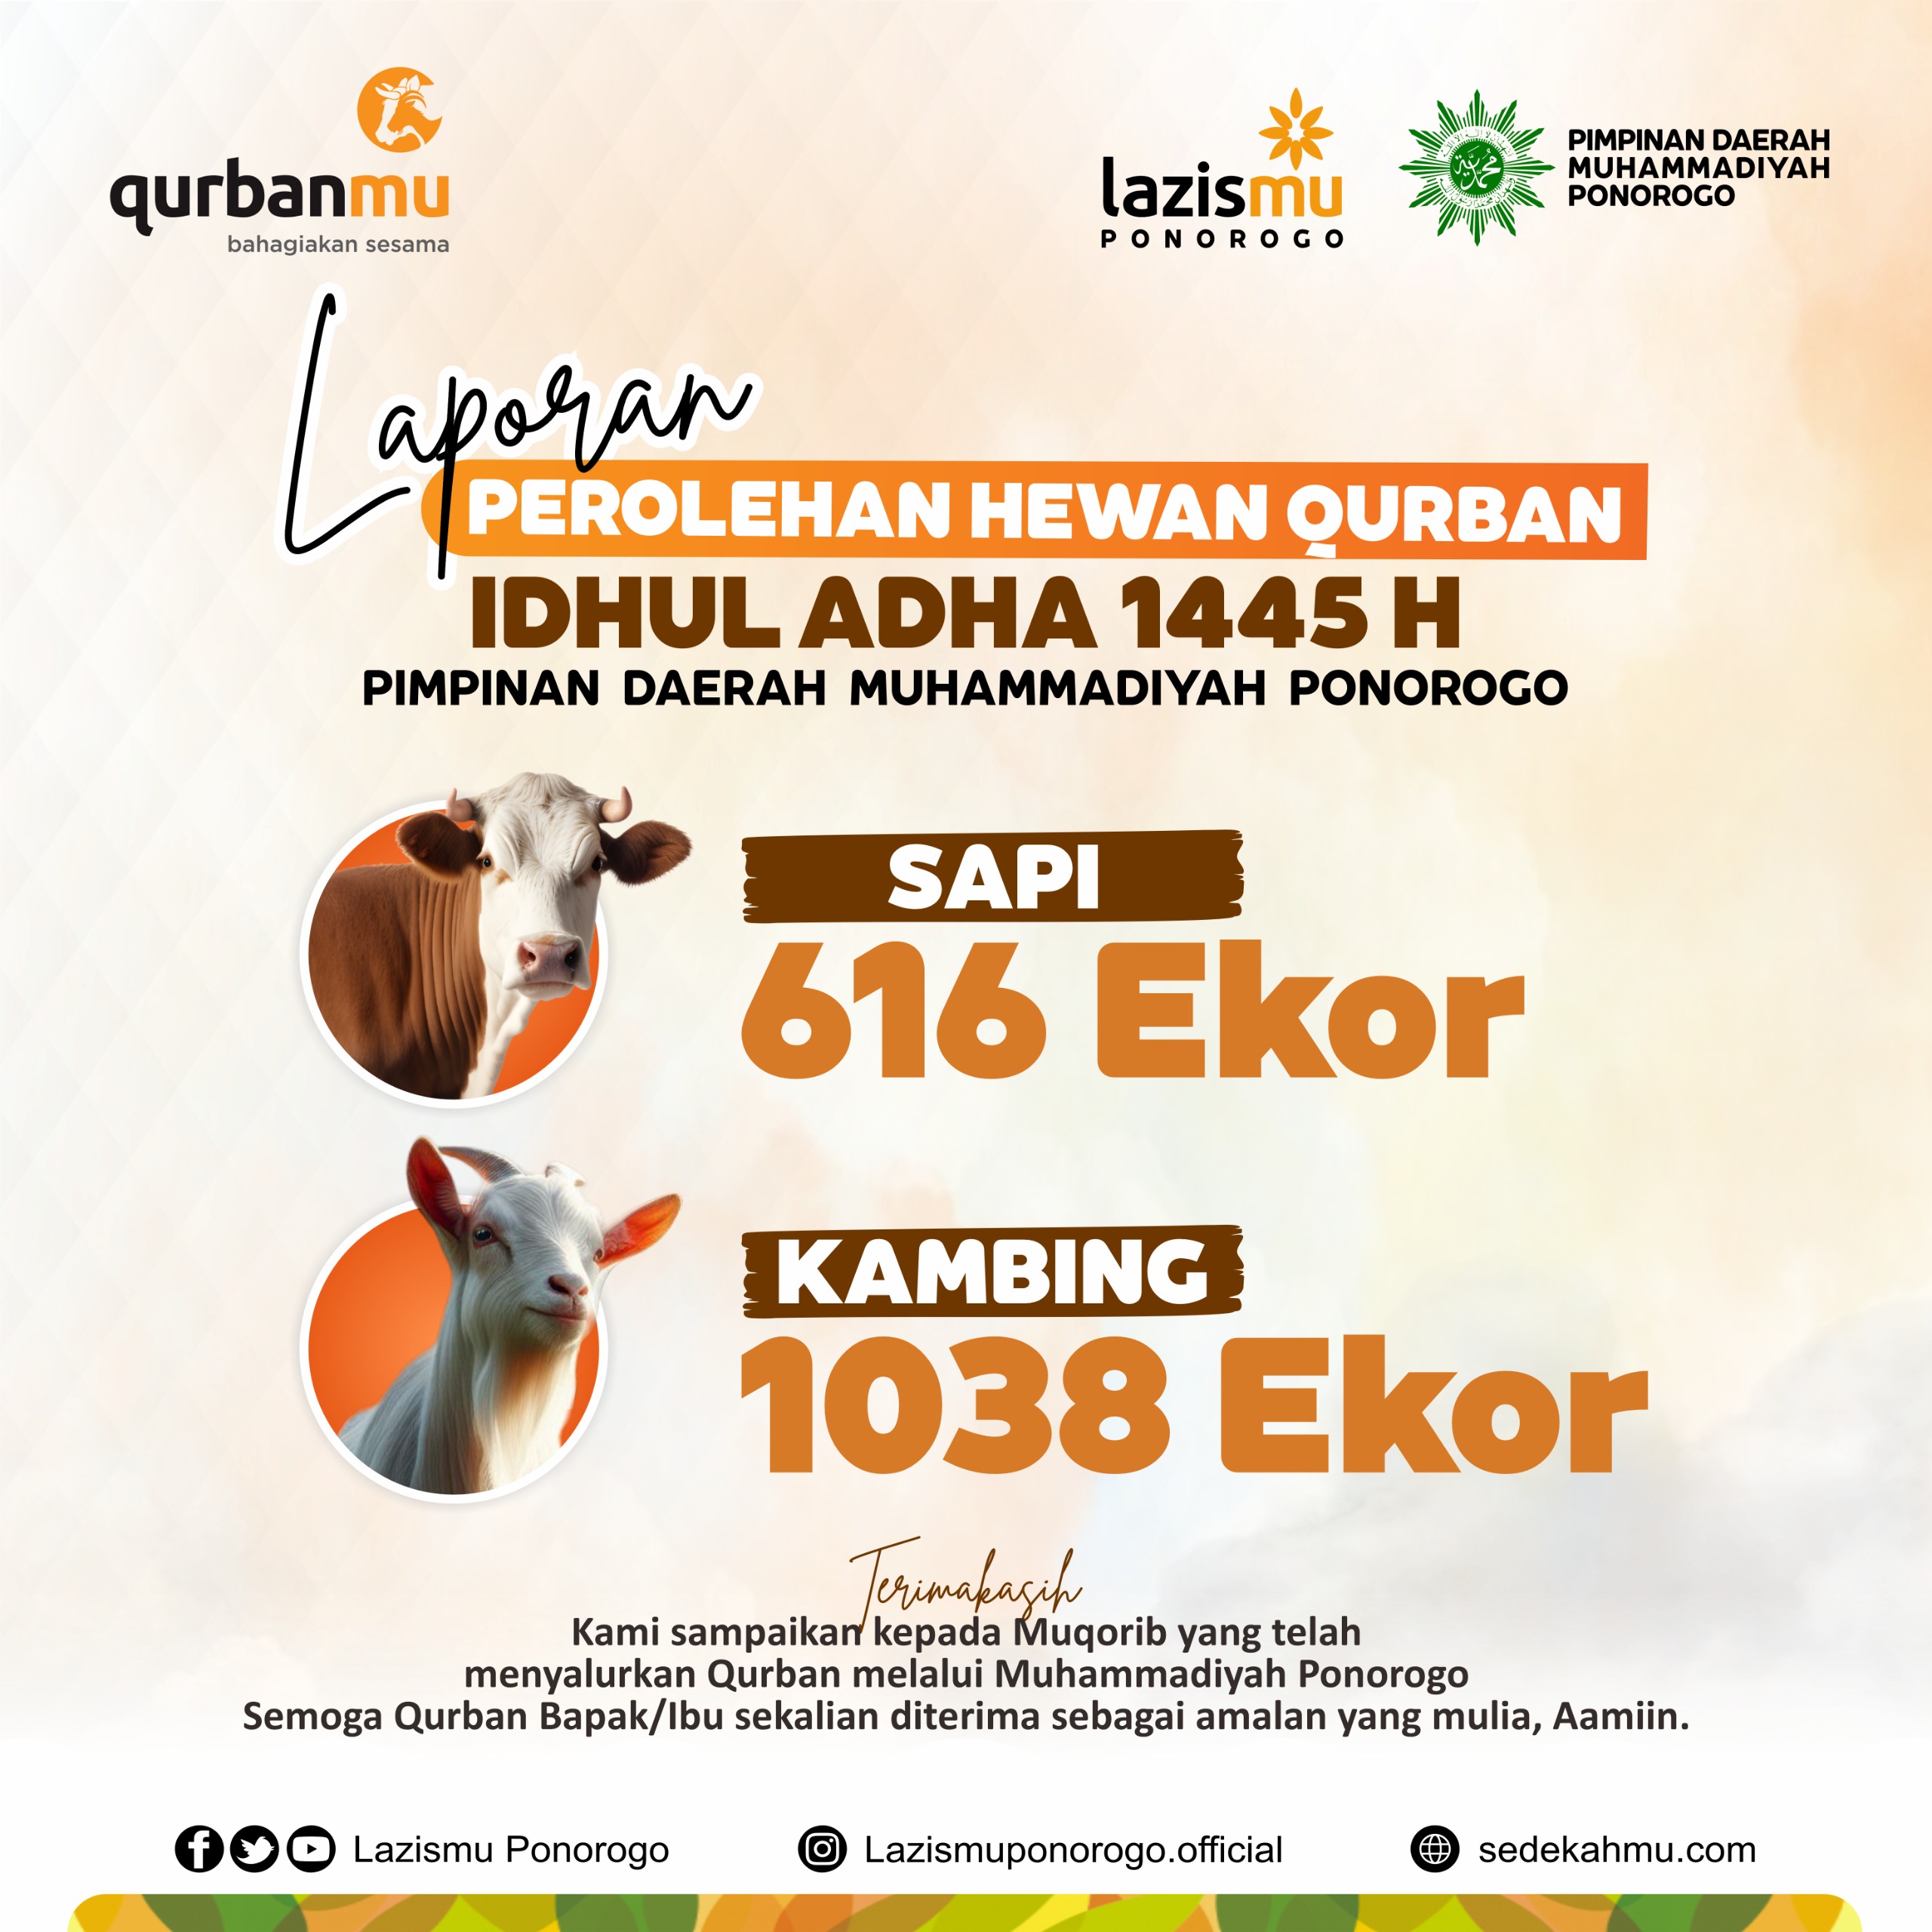 Perolehan Hewan Qurban Capai 616 Ekor Sapi dan 1038 Ekor Kambing: Muhammadiyah Ponorogo Tunjukkan Semangat Berkemajuan